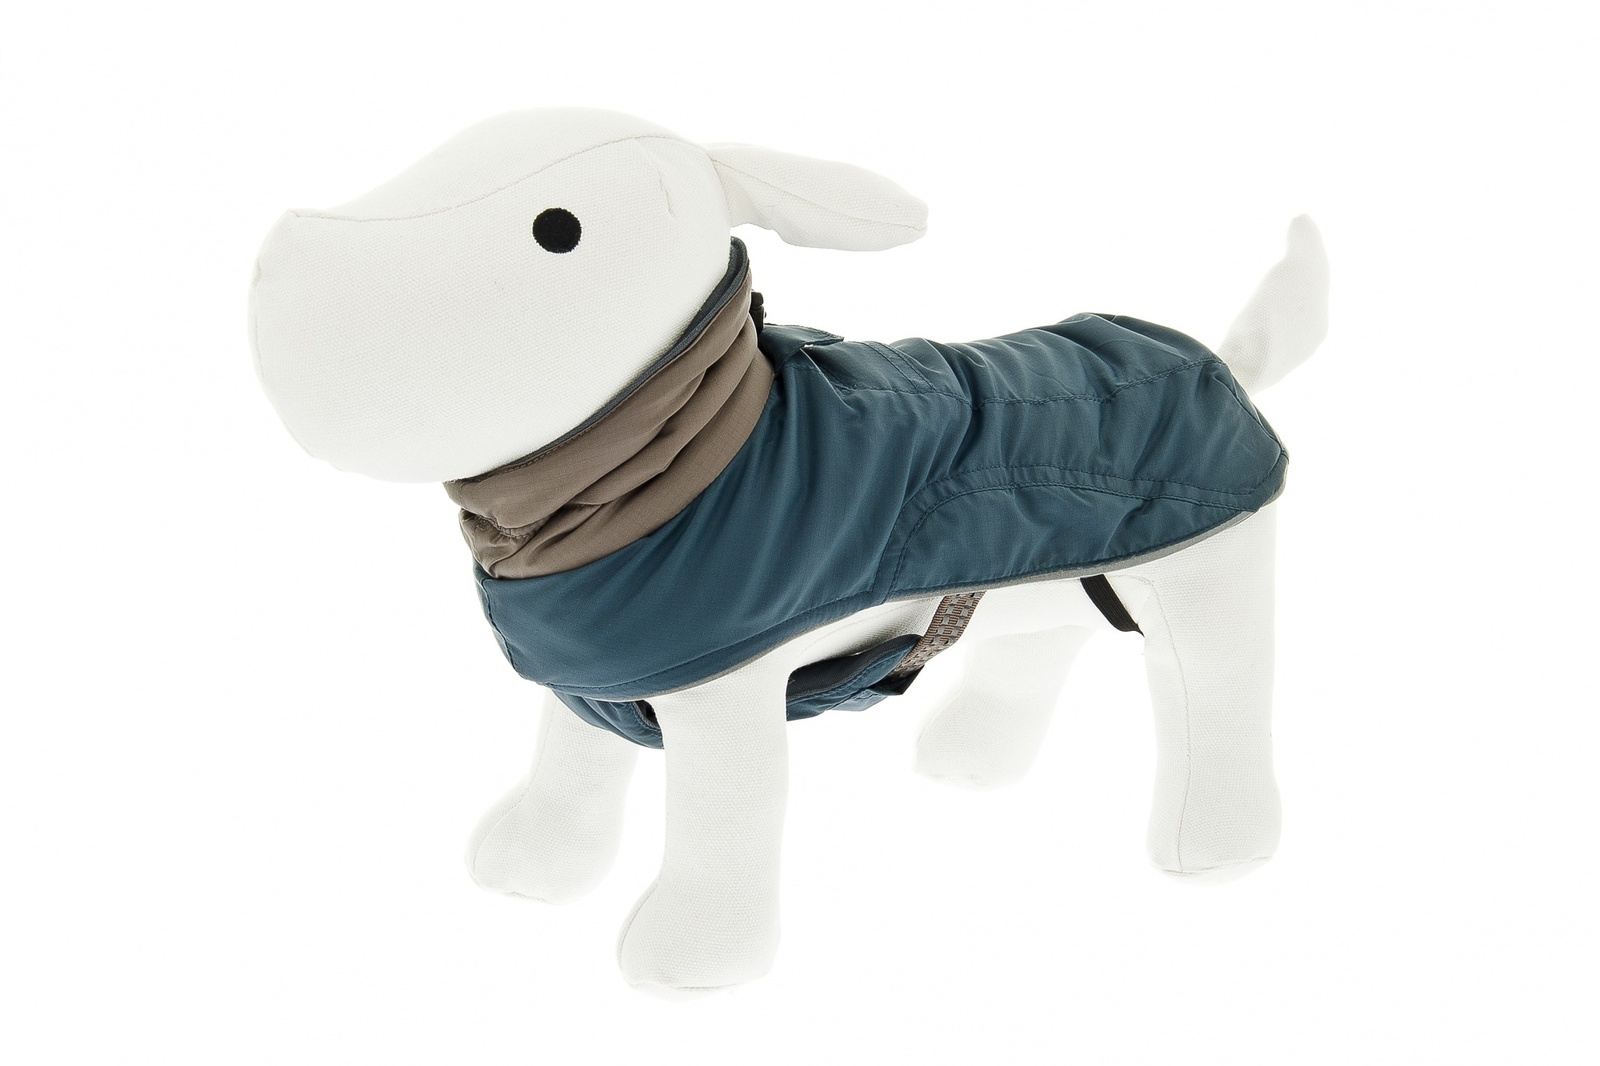 Ferribiella одежда Ferribiella одежда теплая куртка с большим воротом Аляска (синий с серым воротником) (27 см)